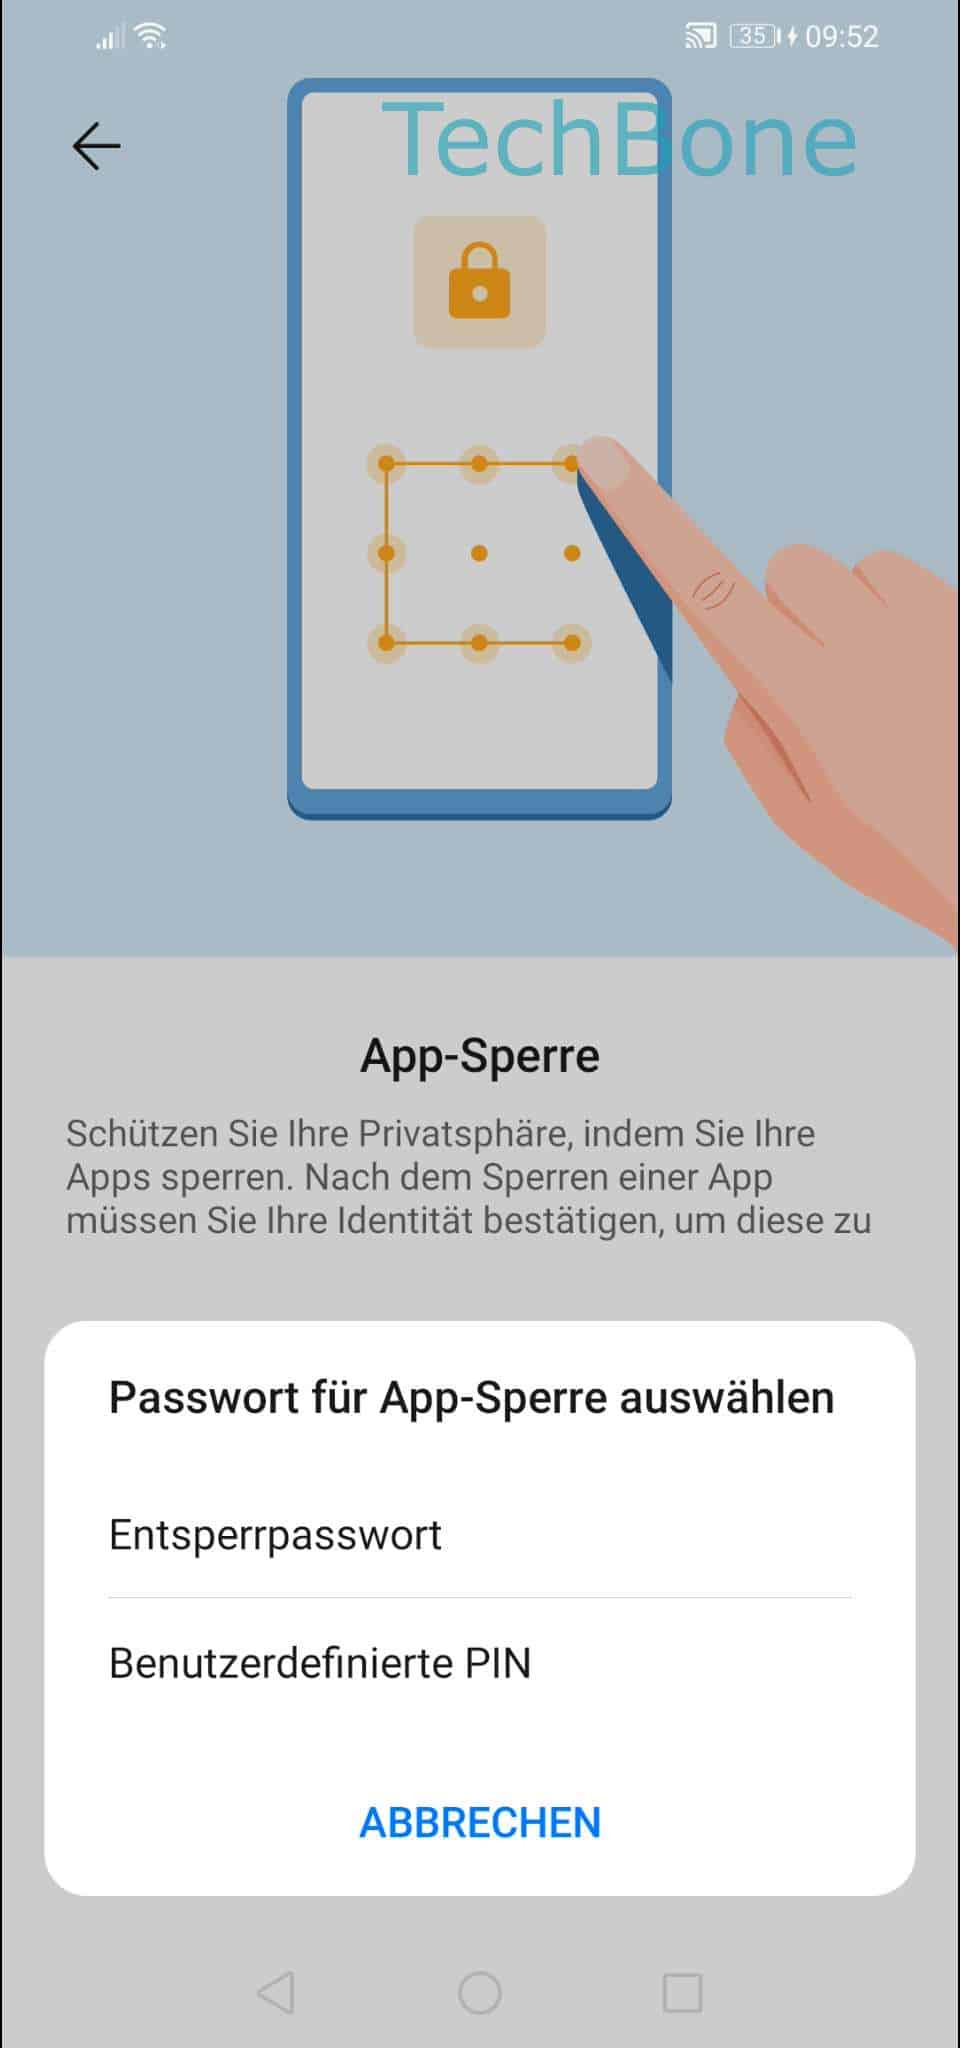 Apps Mit Passwort Schutzen Huawei Handbuch Techbone